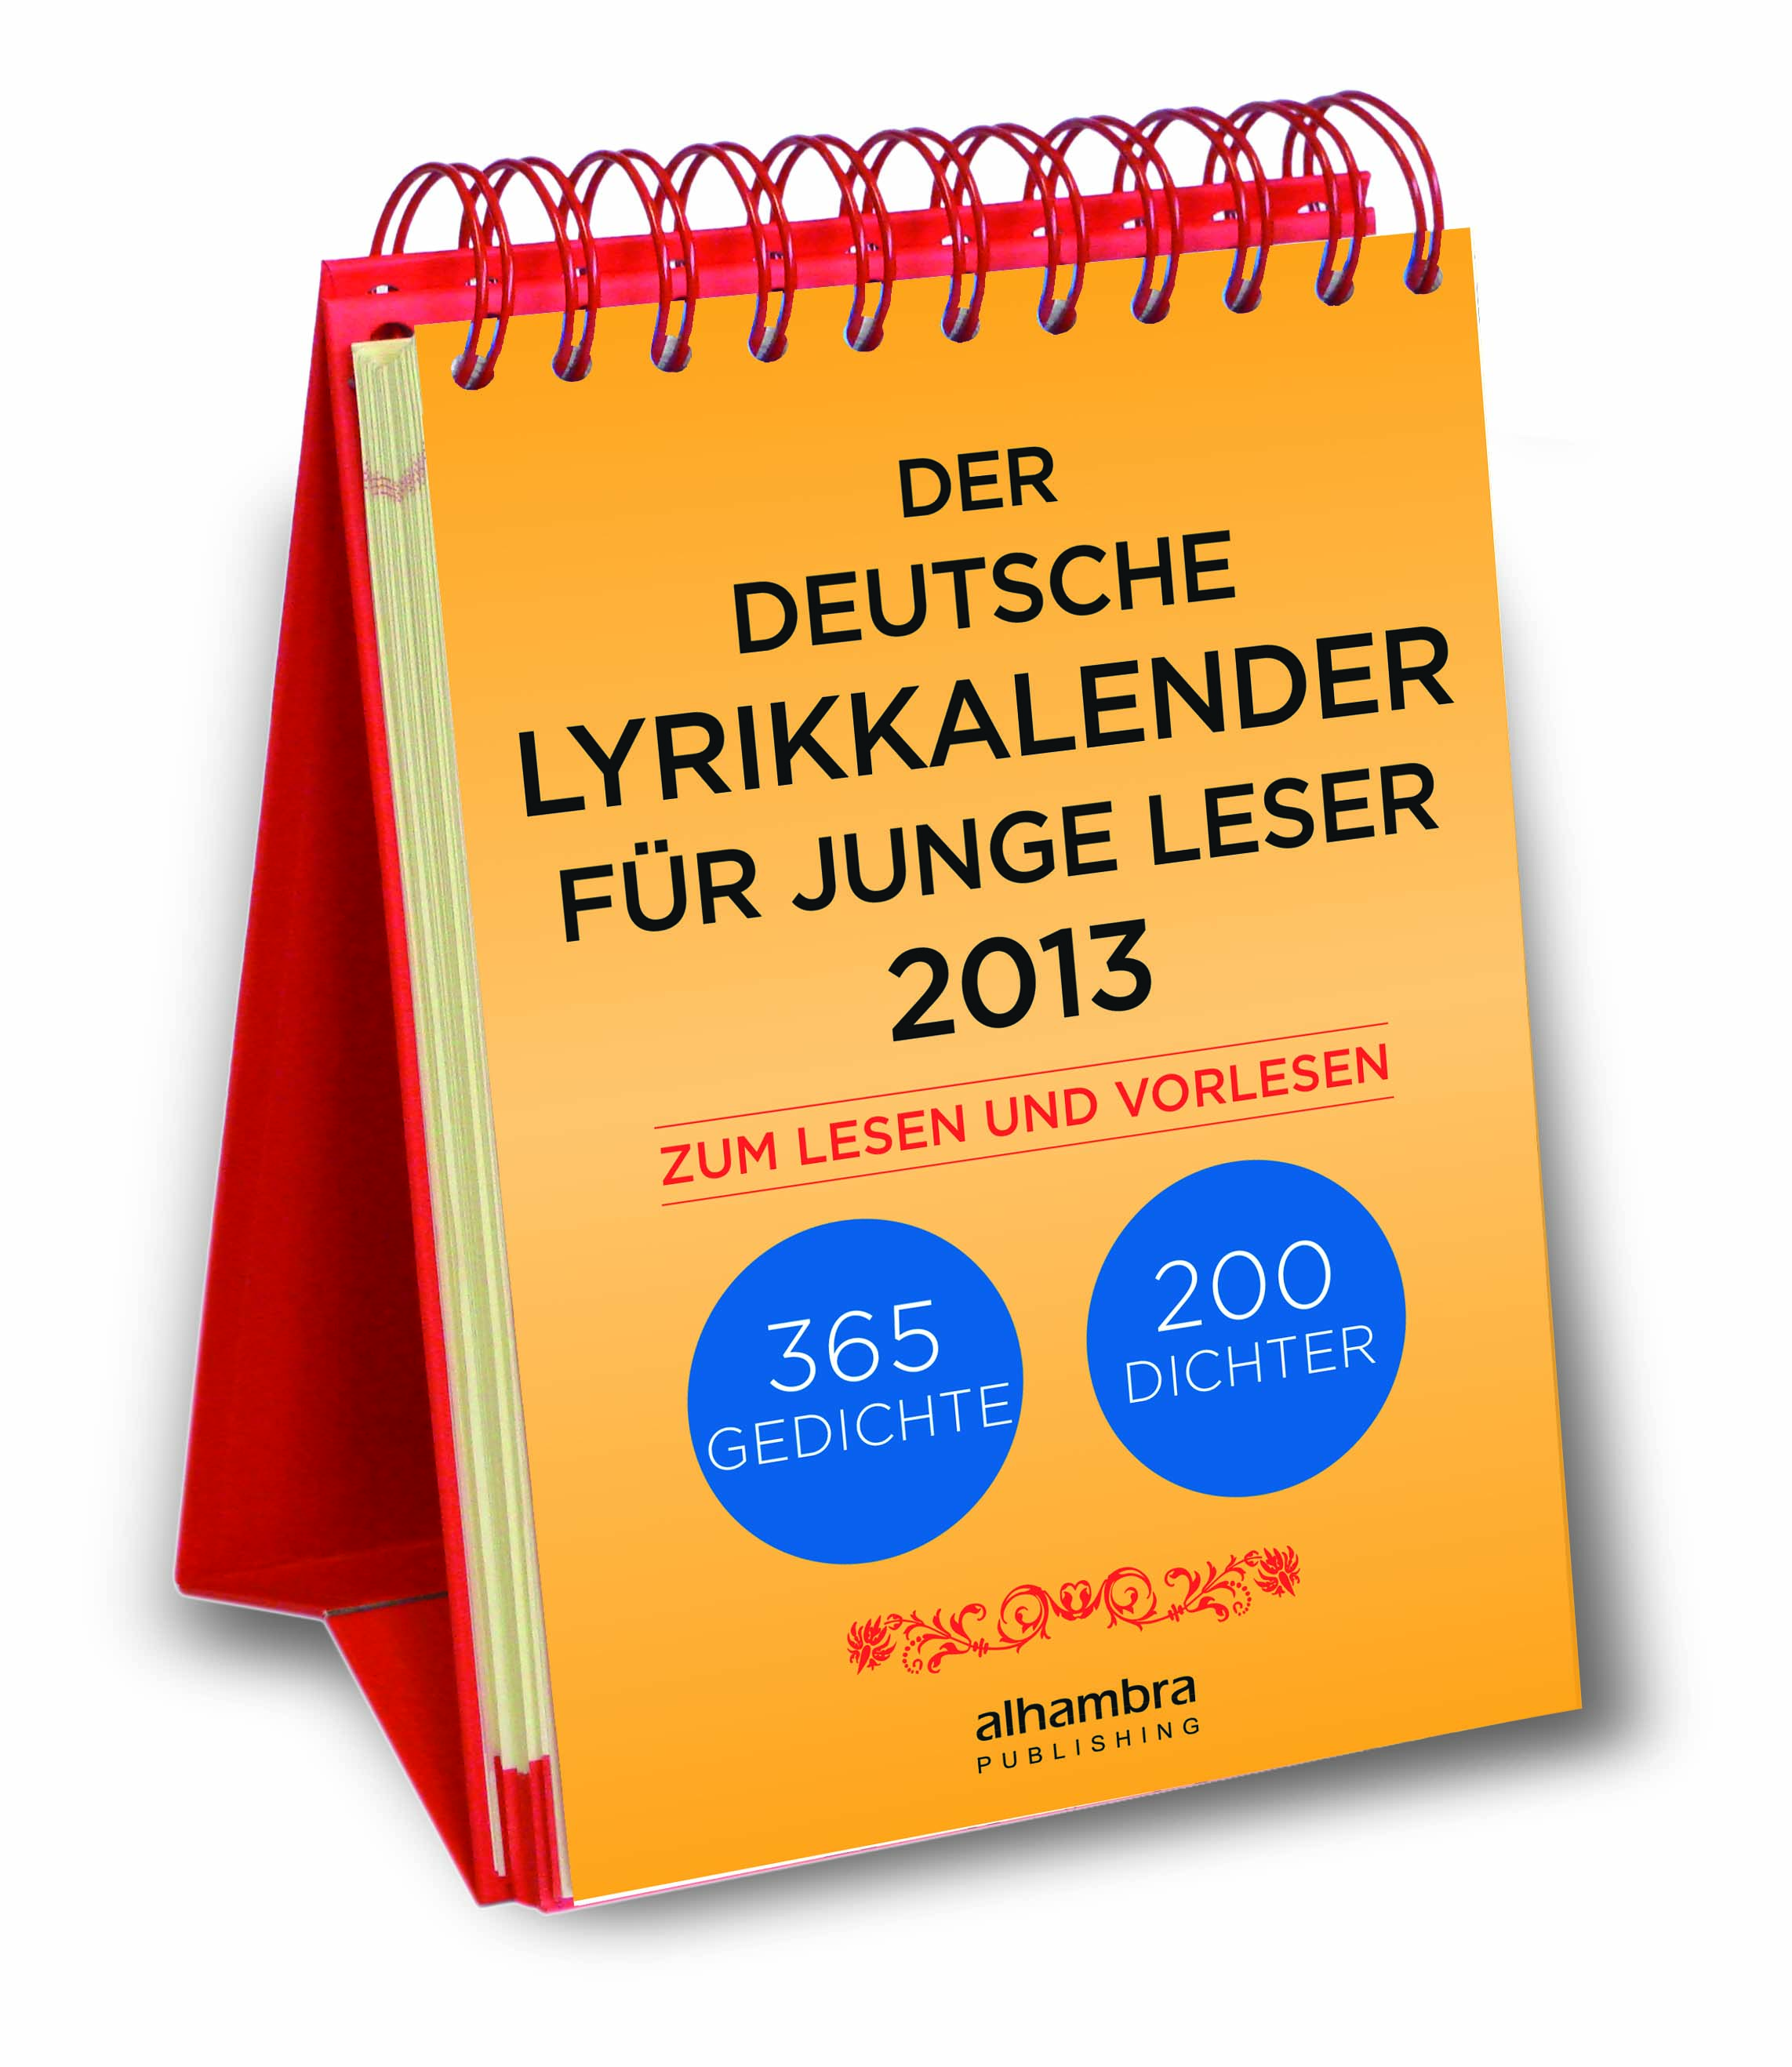 Der deutsche Lyrikkalender für junge Leser 2013.